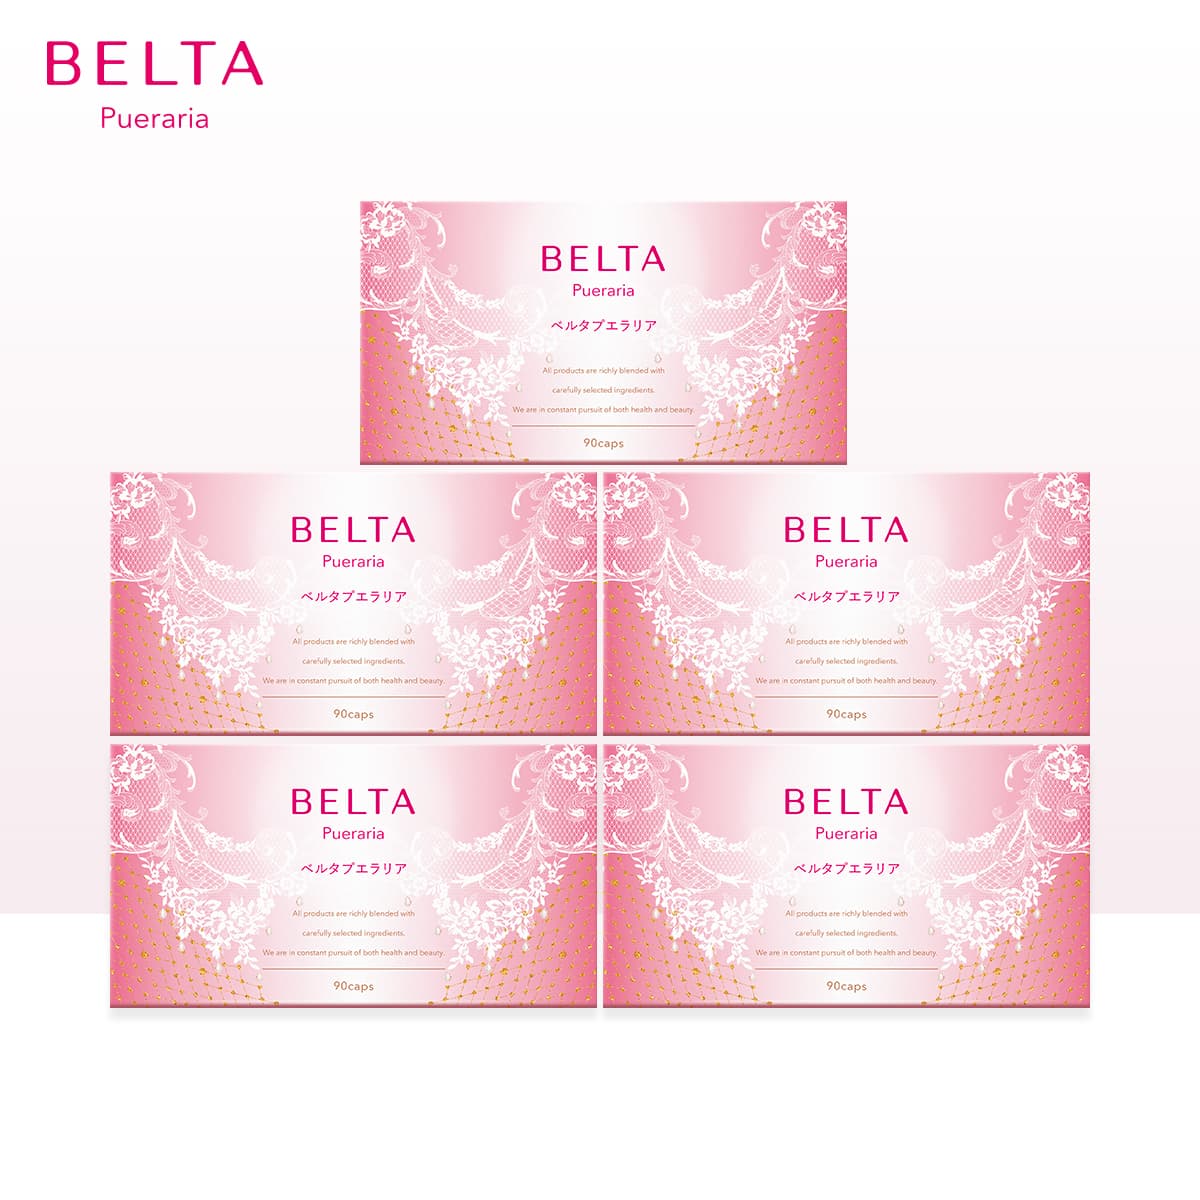 【楽天市場】BELTA ベルタプエラリア 5個セット 【送料無料】 【当日発送】：ベルタ公式ショップ【楽天市場店】